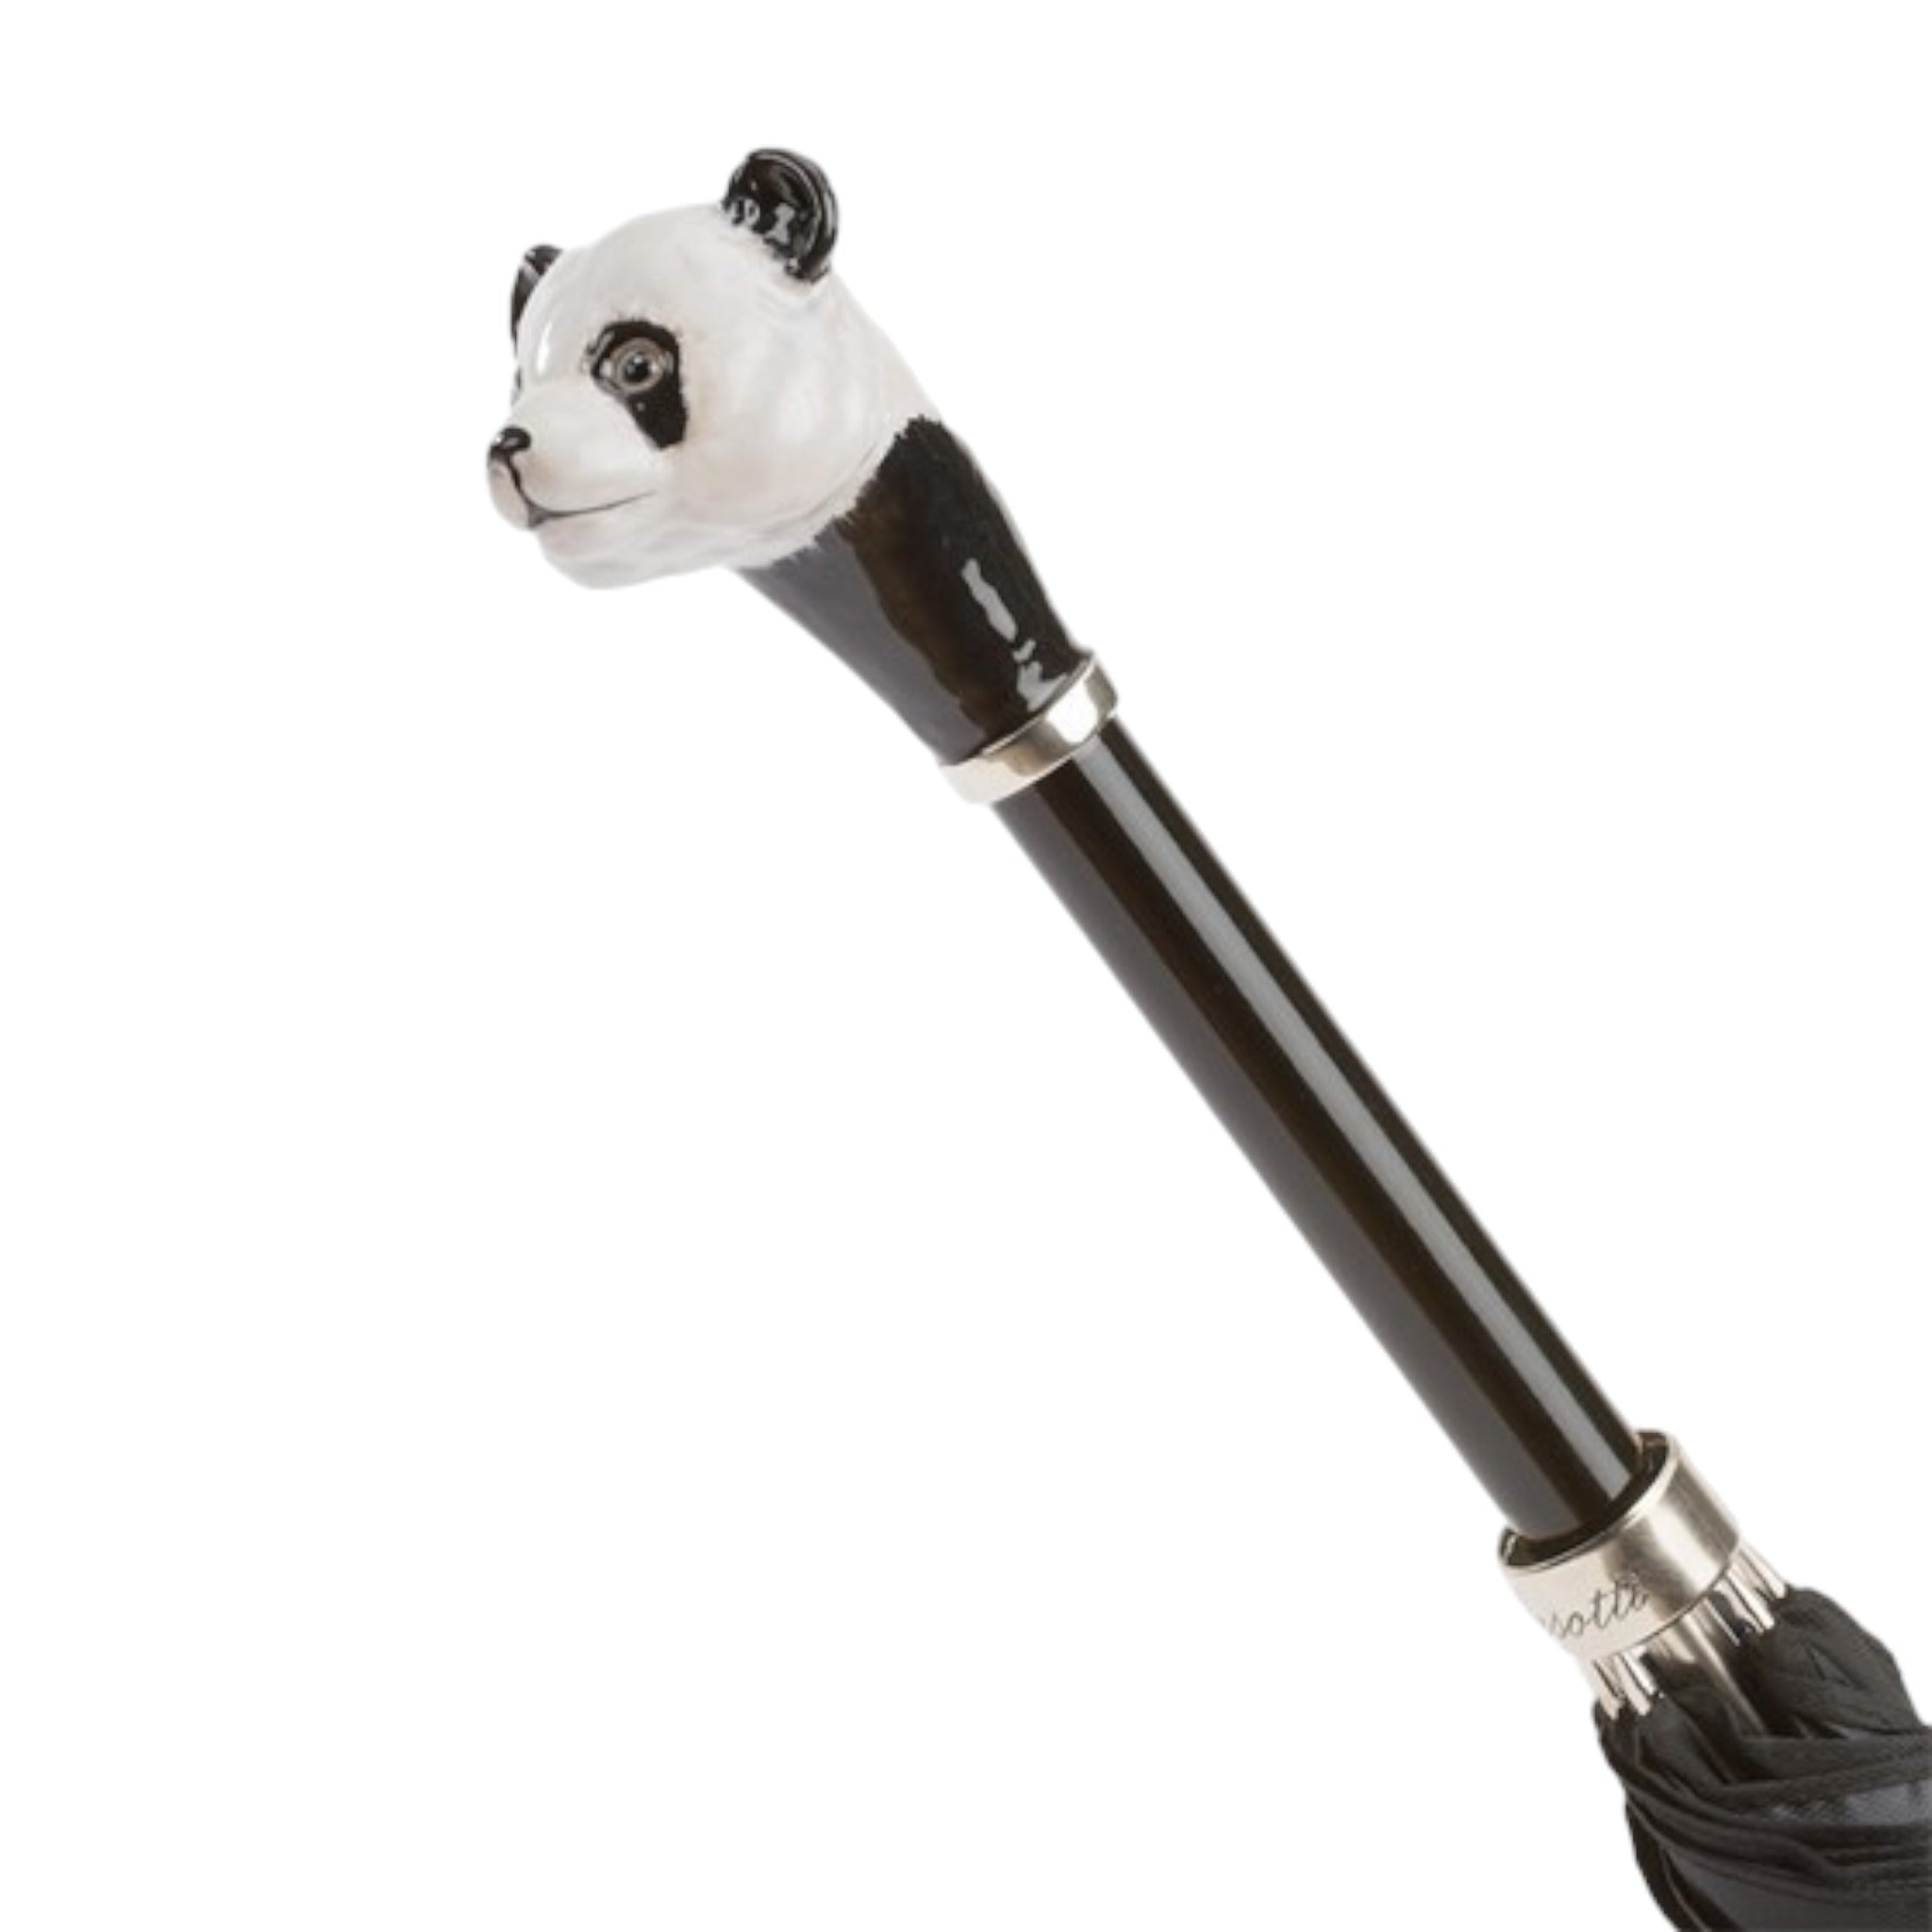 Close up of Pasotti Panda umbrella handle at an angle